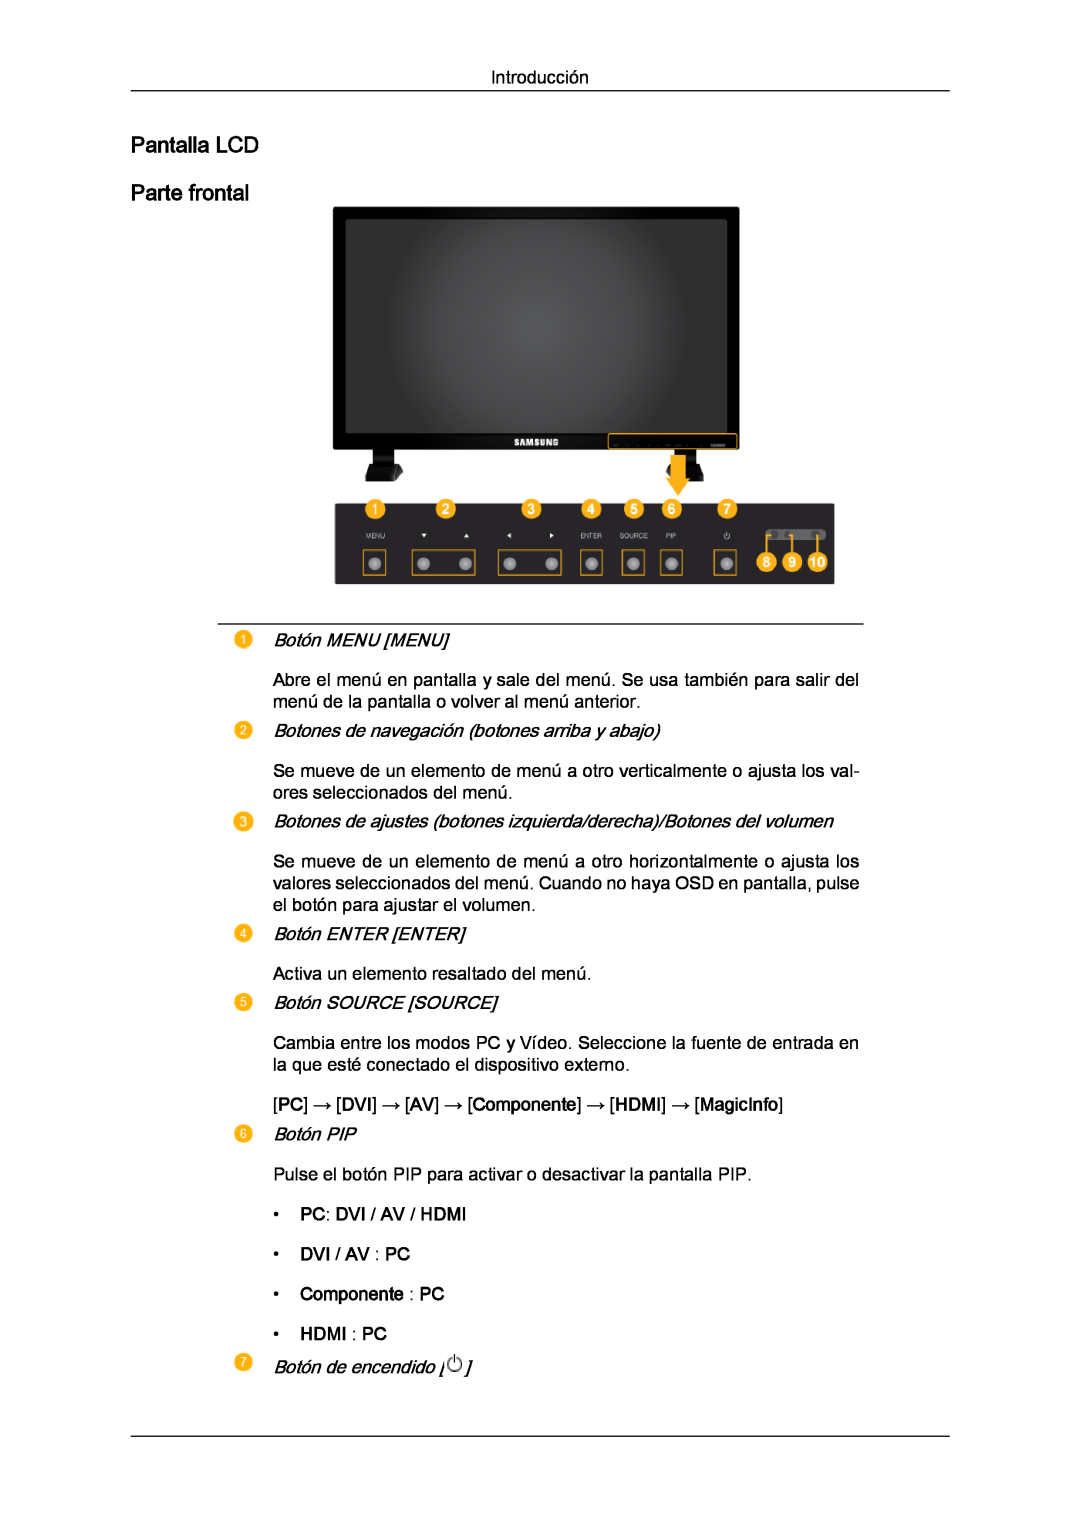 Samsung LH82TCUMBG/EN Pantalla LCD Parte frontal, Botón MENU MENU, Botones de navegación botones arriba y abajo, Botón PIP 